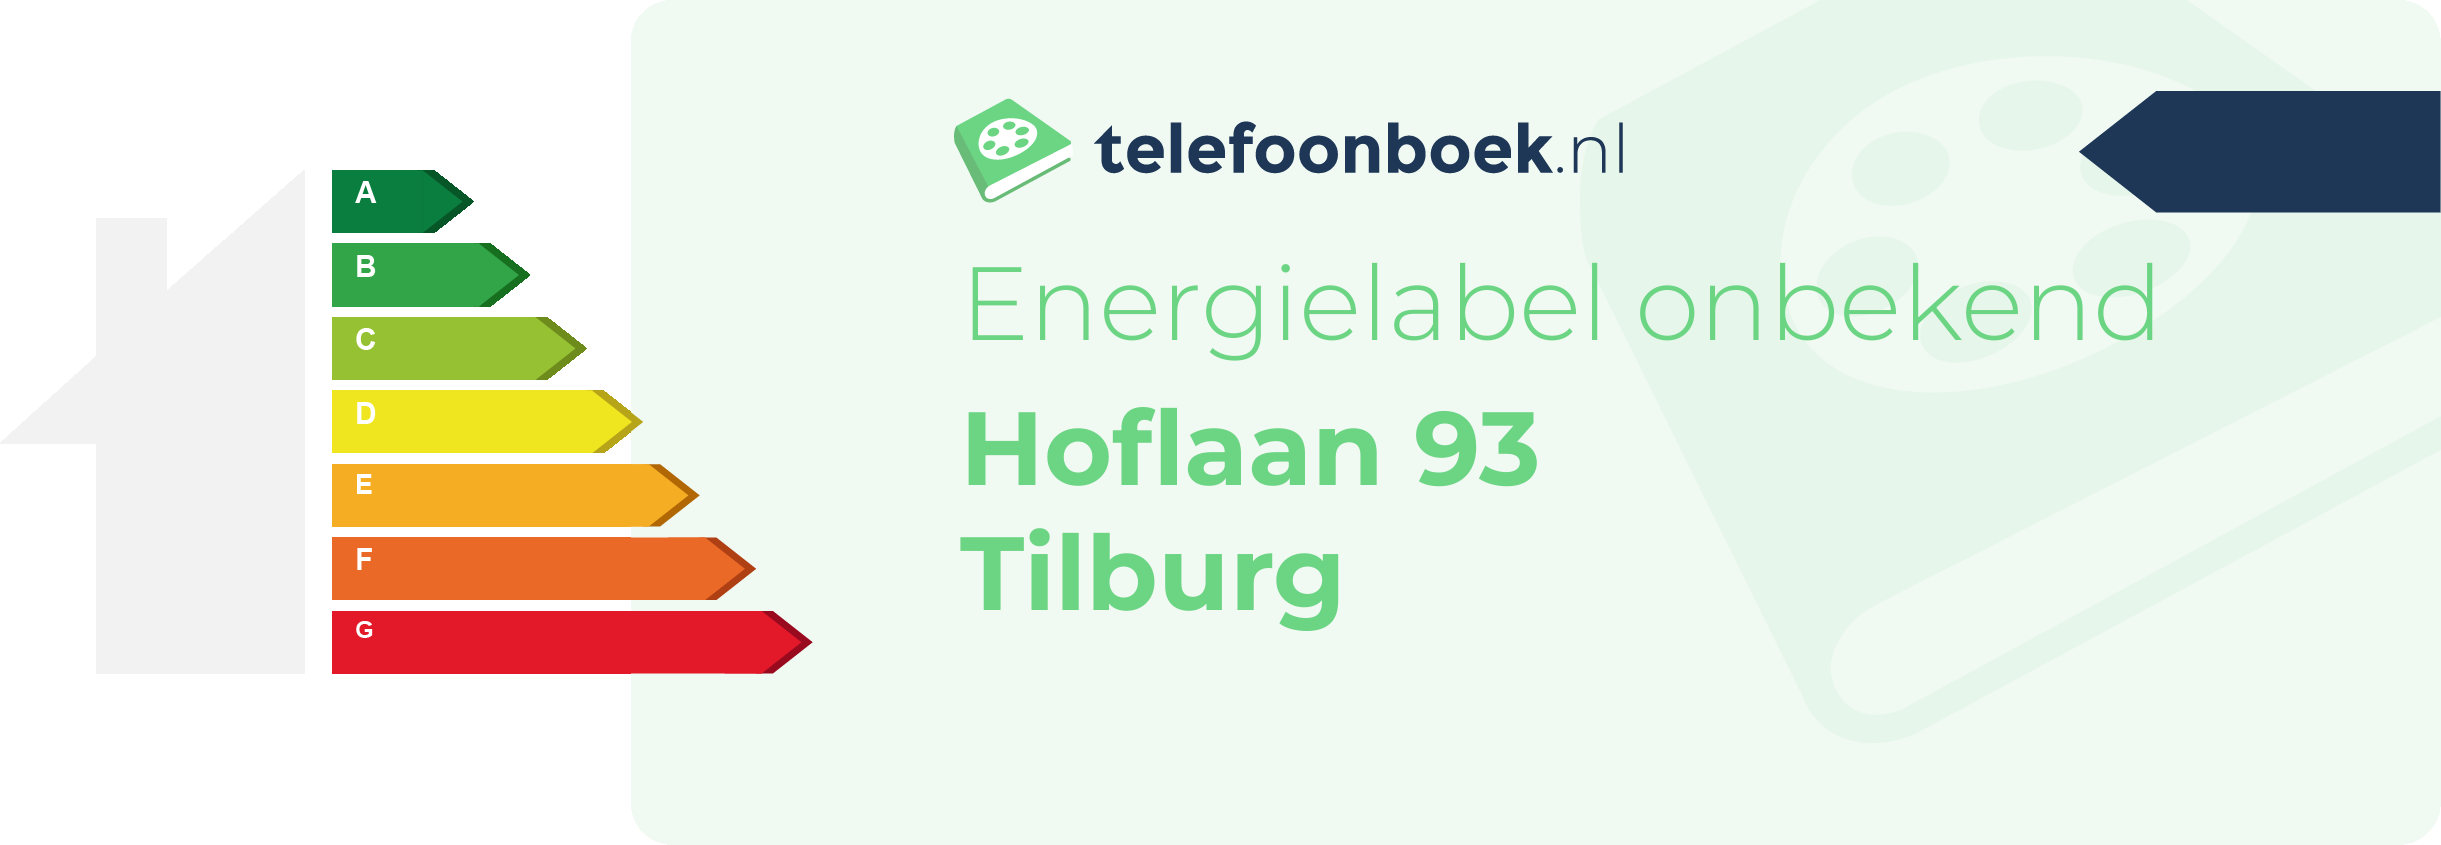 Energielabel Hoflaan 93 Tilburg